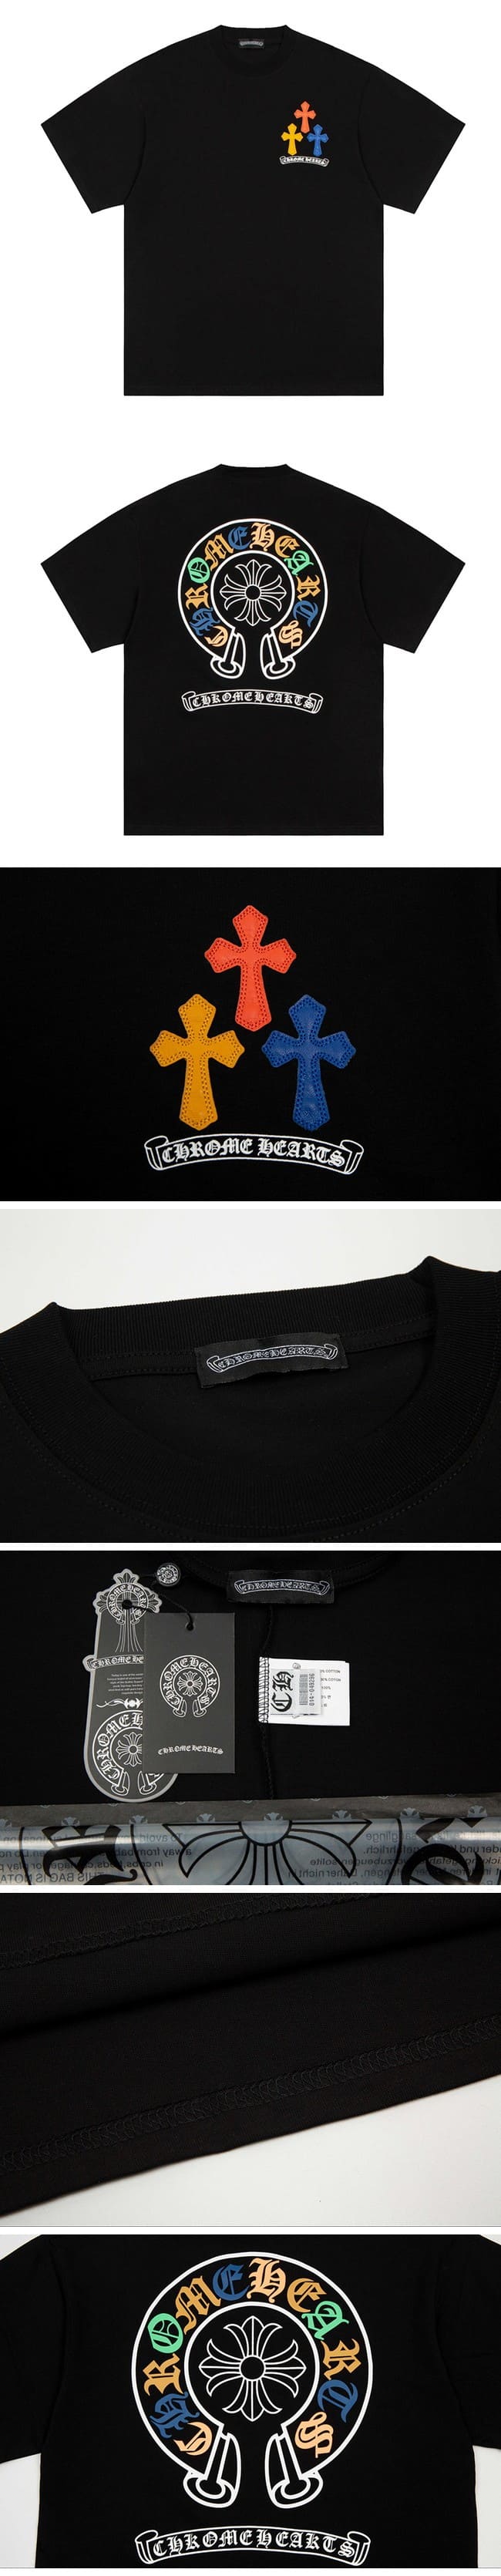 Chrome Hearts Multi Color Horseshoe Tee Black クロムハーツ マルチカラー ホースシュー Tシャツ ブラック